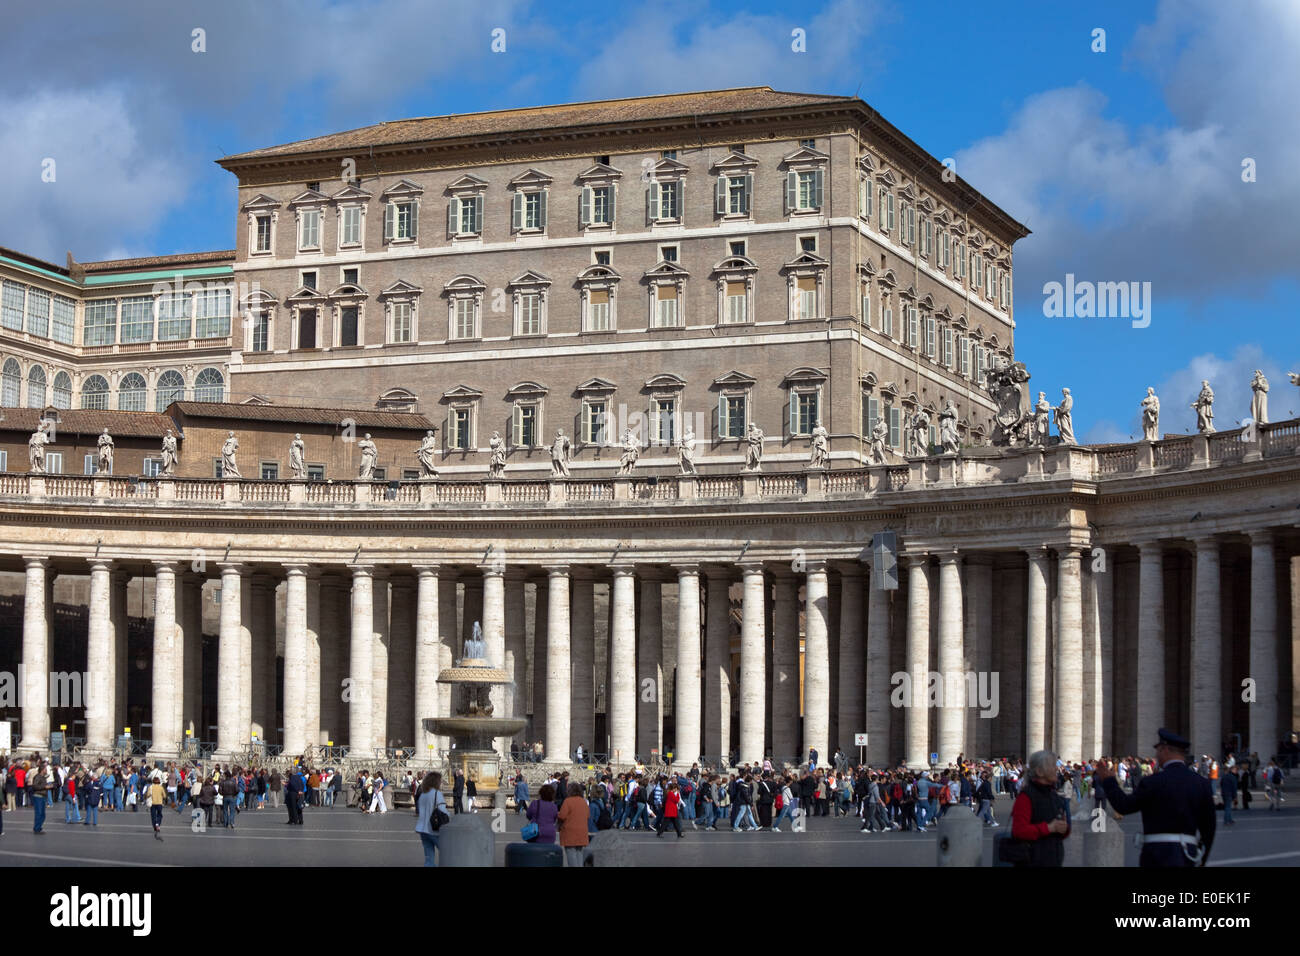 Apostolischer Palast, Vatikan - Apostolischen Palast, Vatikan Stockfoto